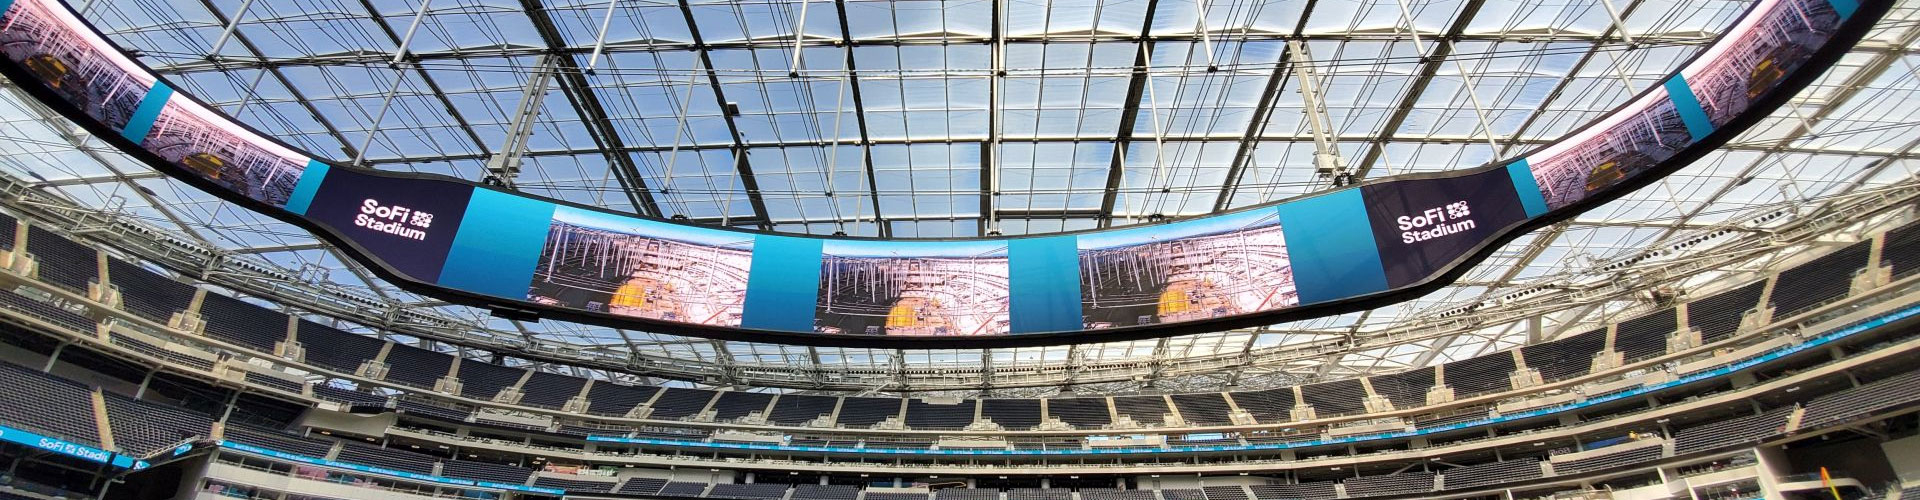 Stadium Led Display